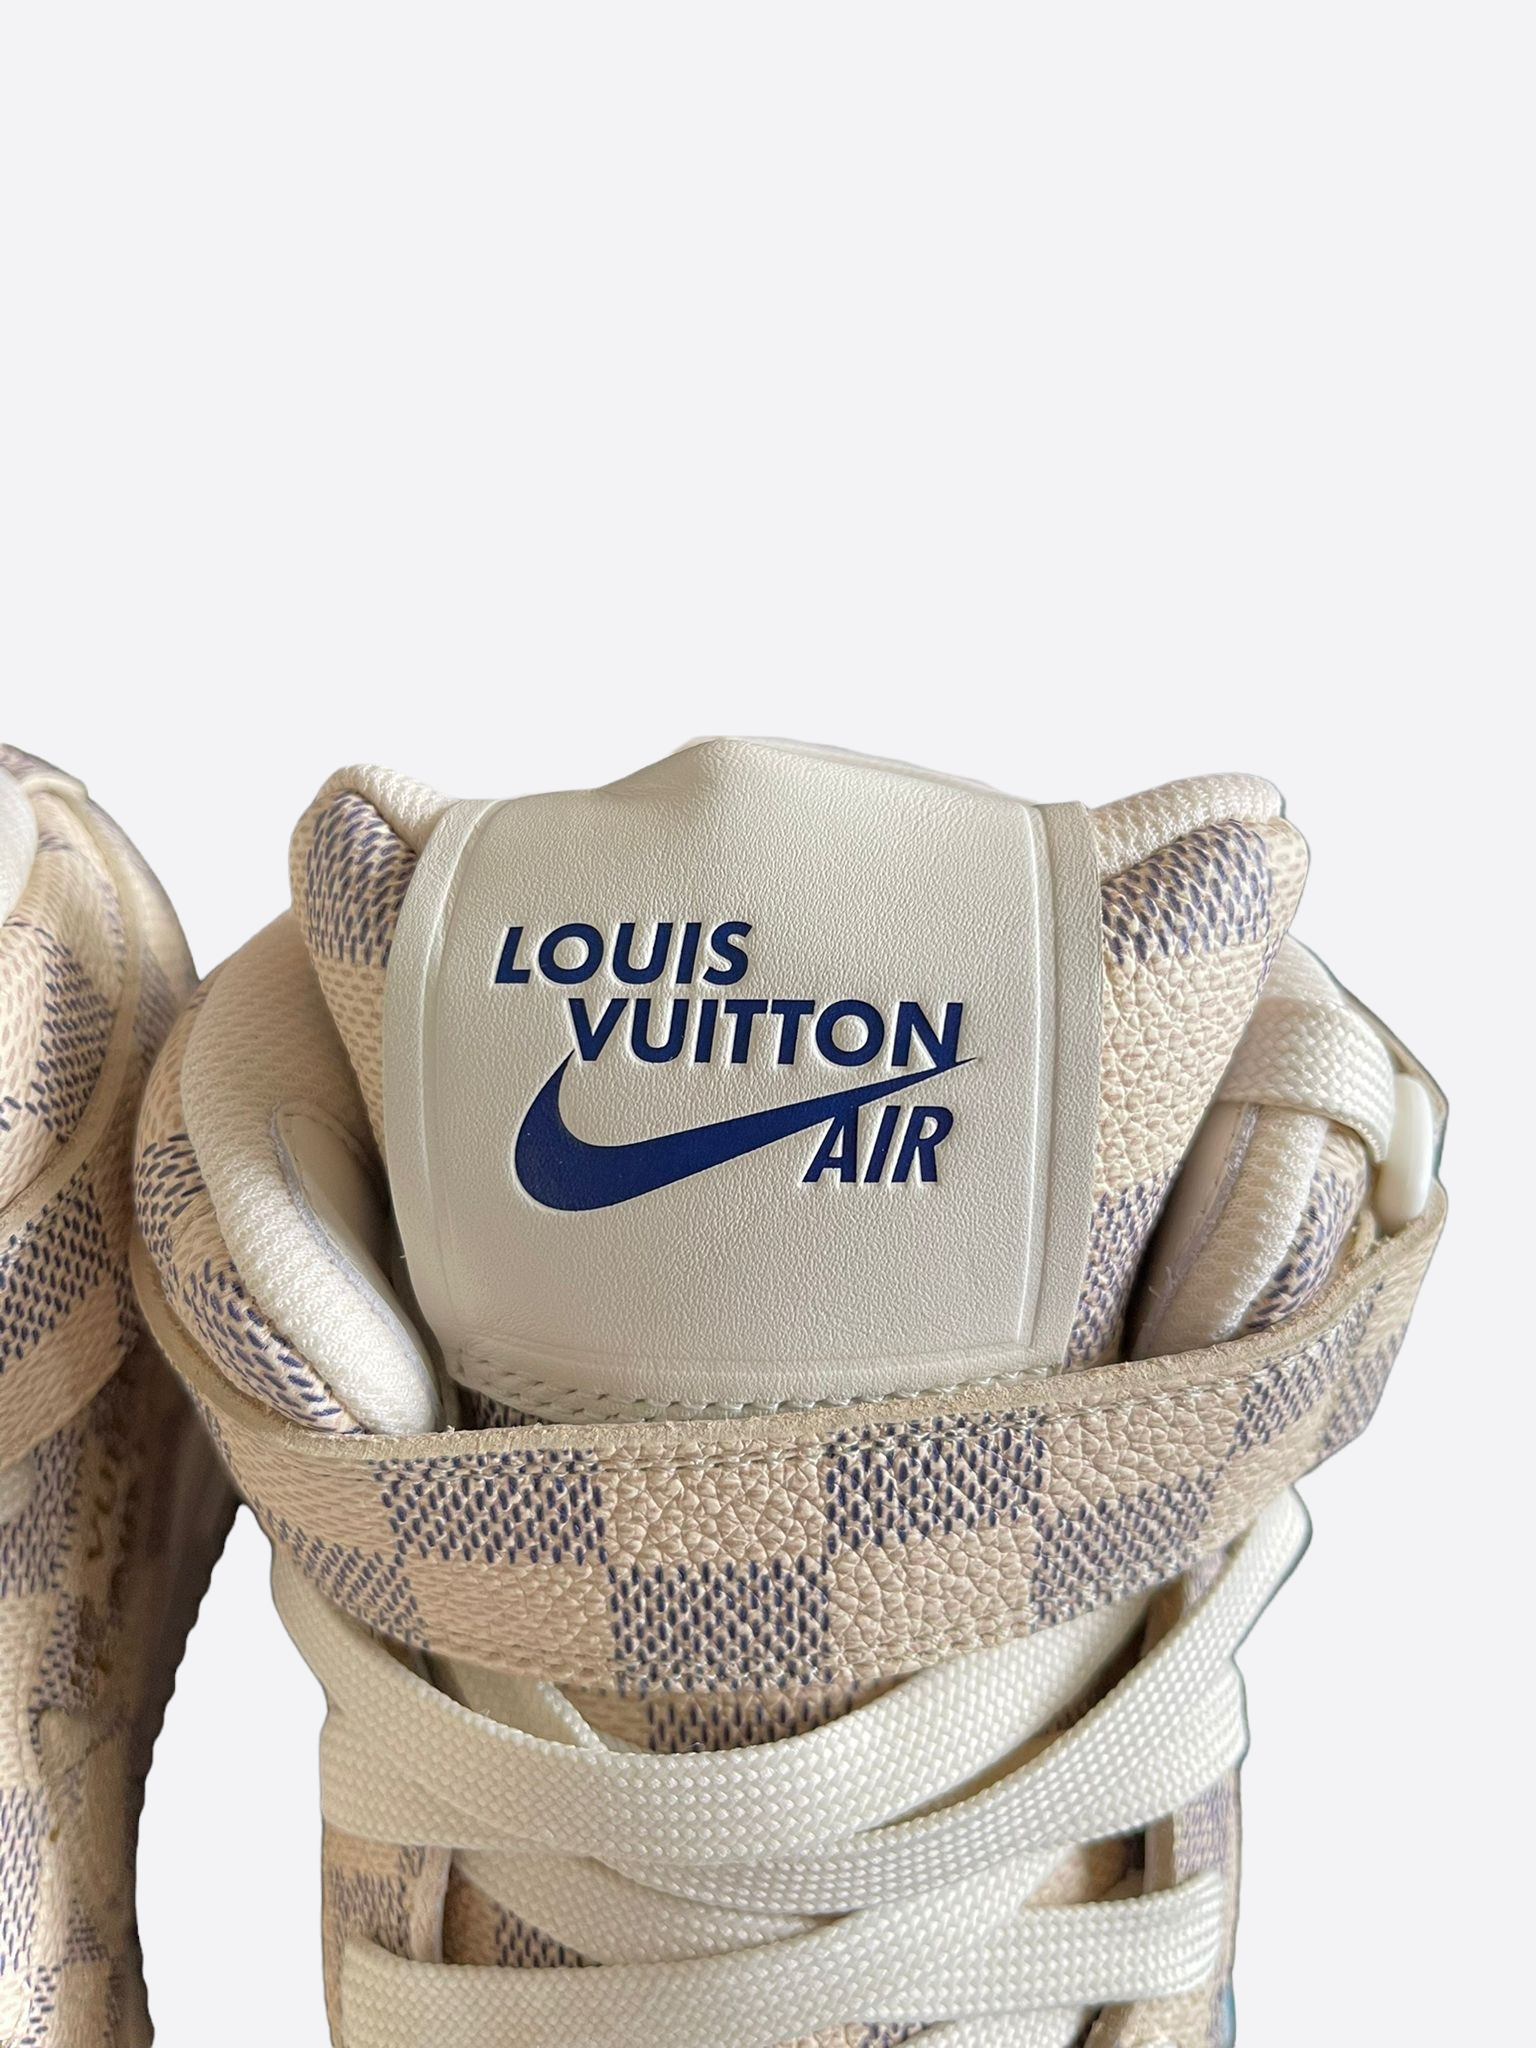 Nike Air Force 1 Mid Louis Vuitton Graffiti